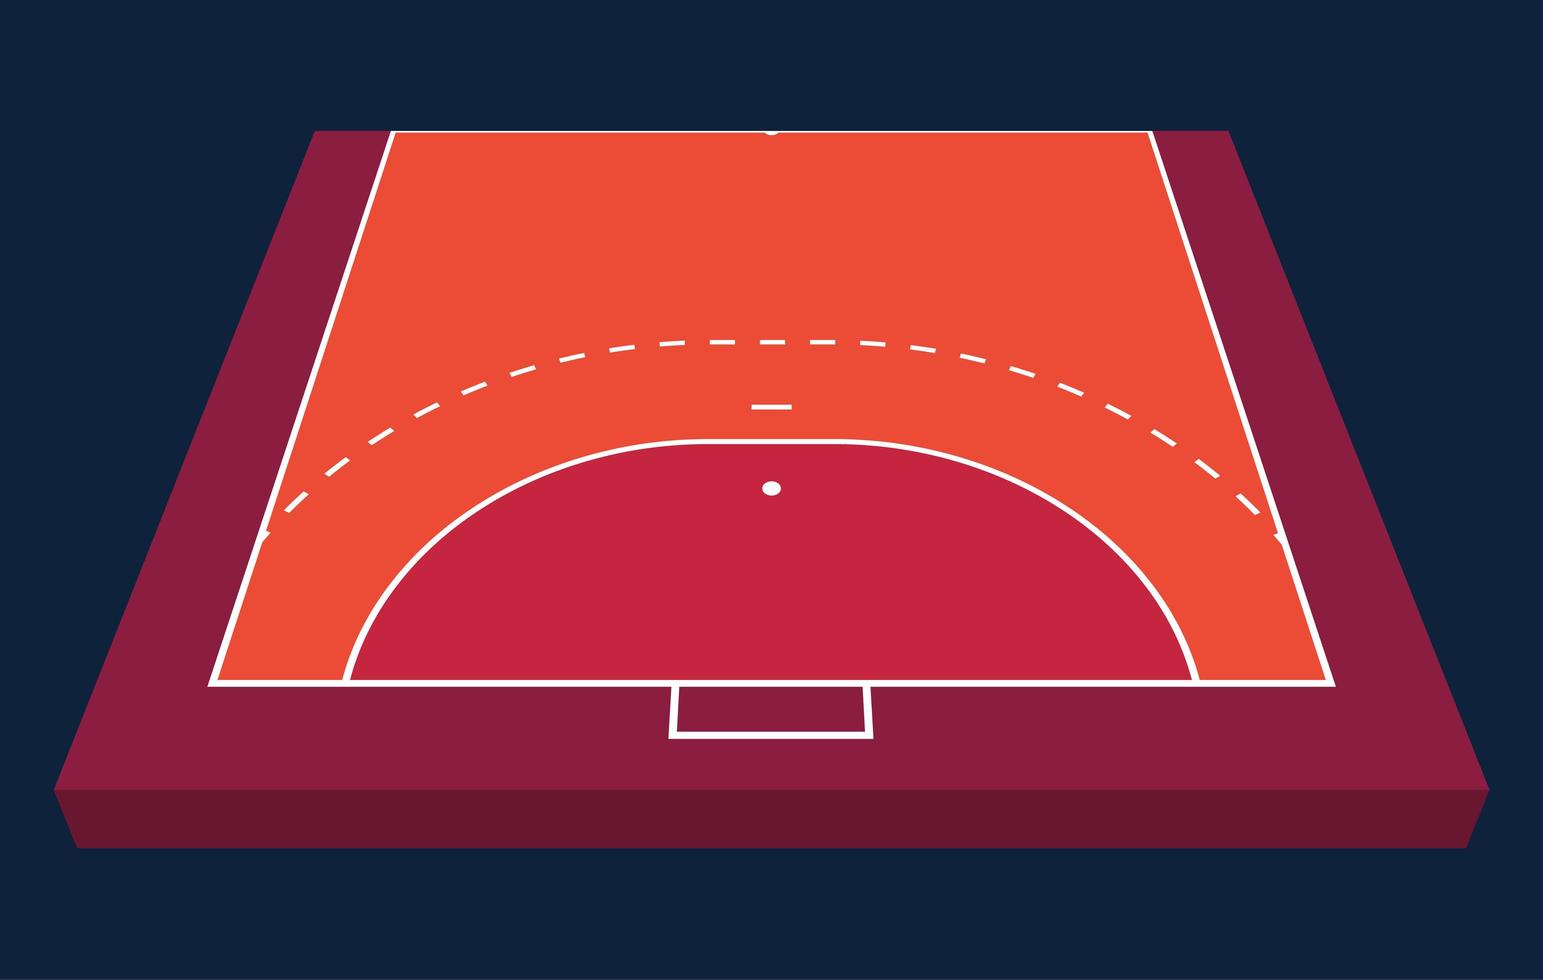 perspectief half veld voor handbal. oranje omtrek van lijnen handbal veld vectorillustratie. vector